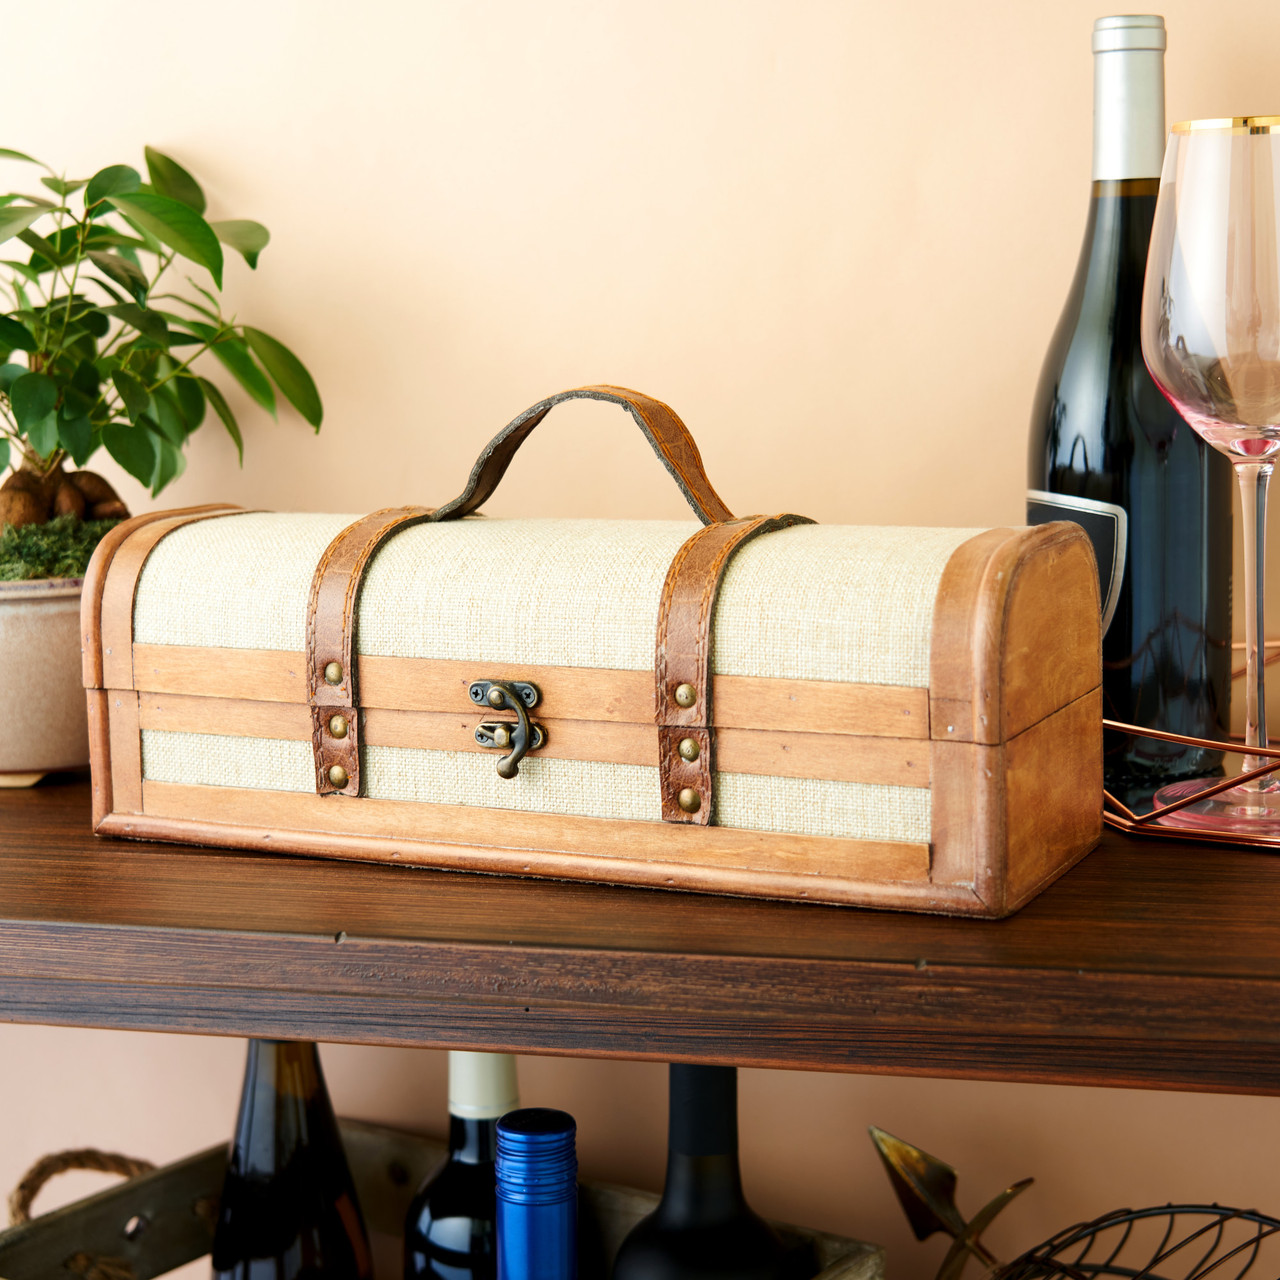 1-Bottle Vintage Striped Trunk Wine Box by Twine®